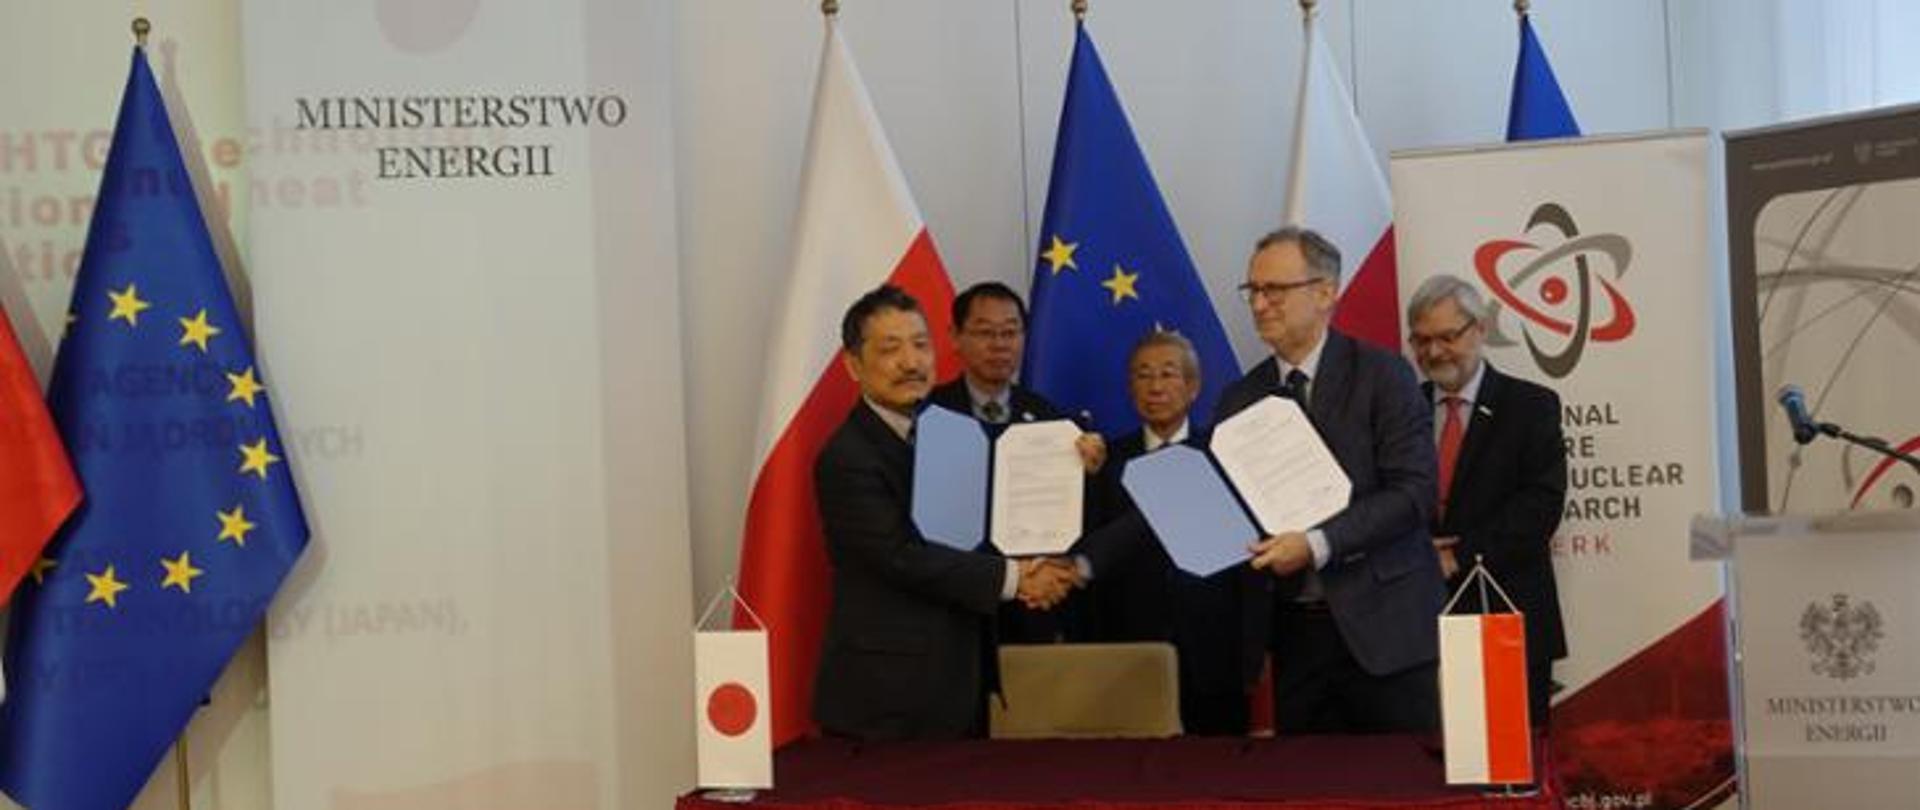 Zdjęcie przedstawiające przedstawicieli strony polskiej i japońskiej trzymających w rękach wydrukowane porozumienie o współpracy 